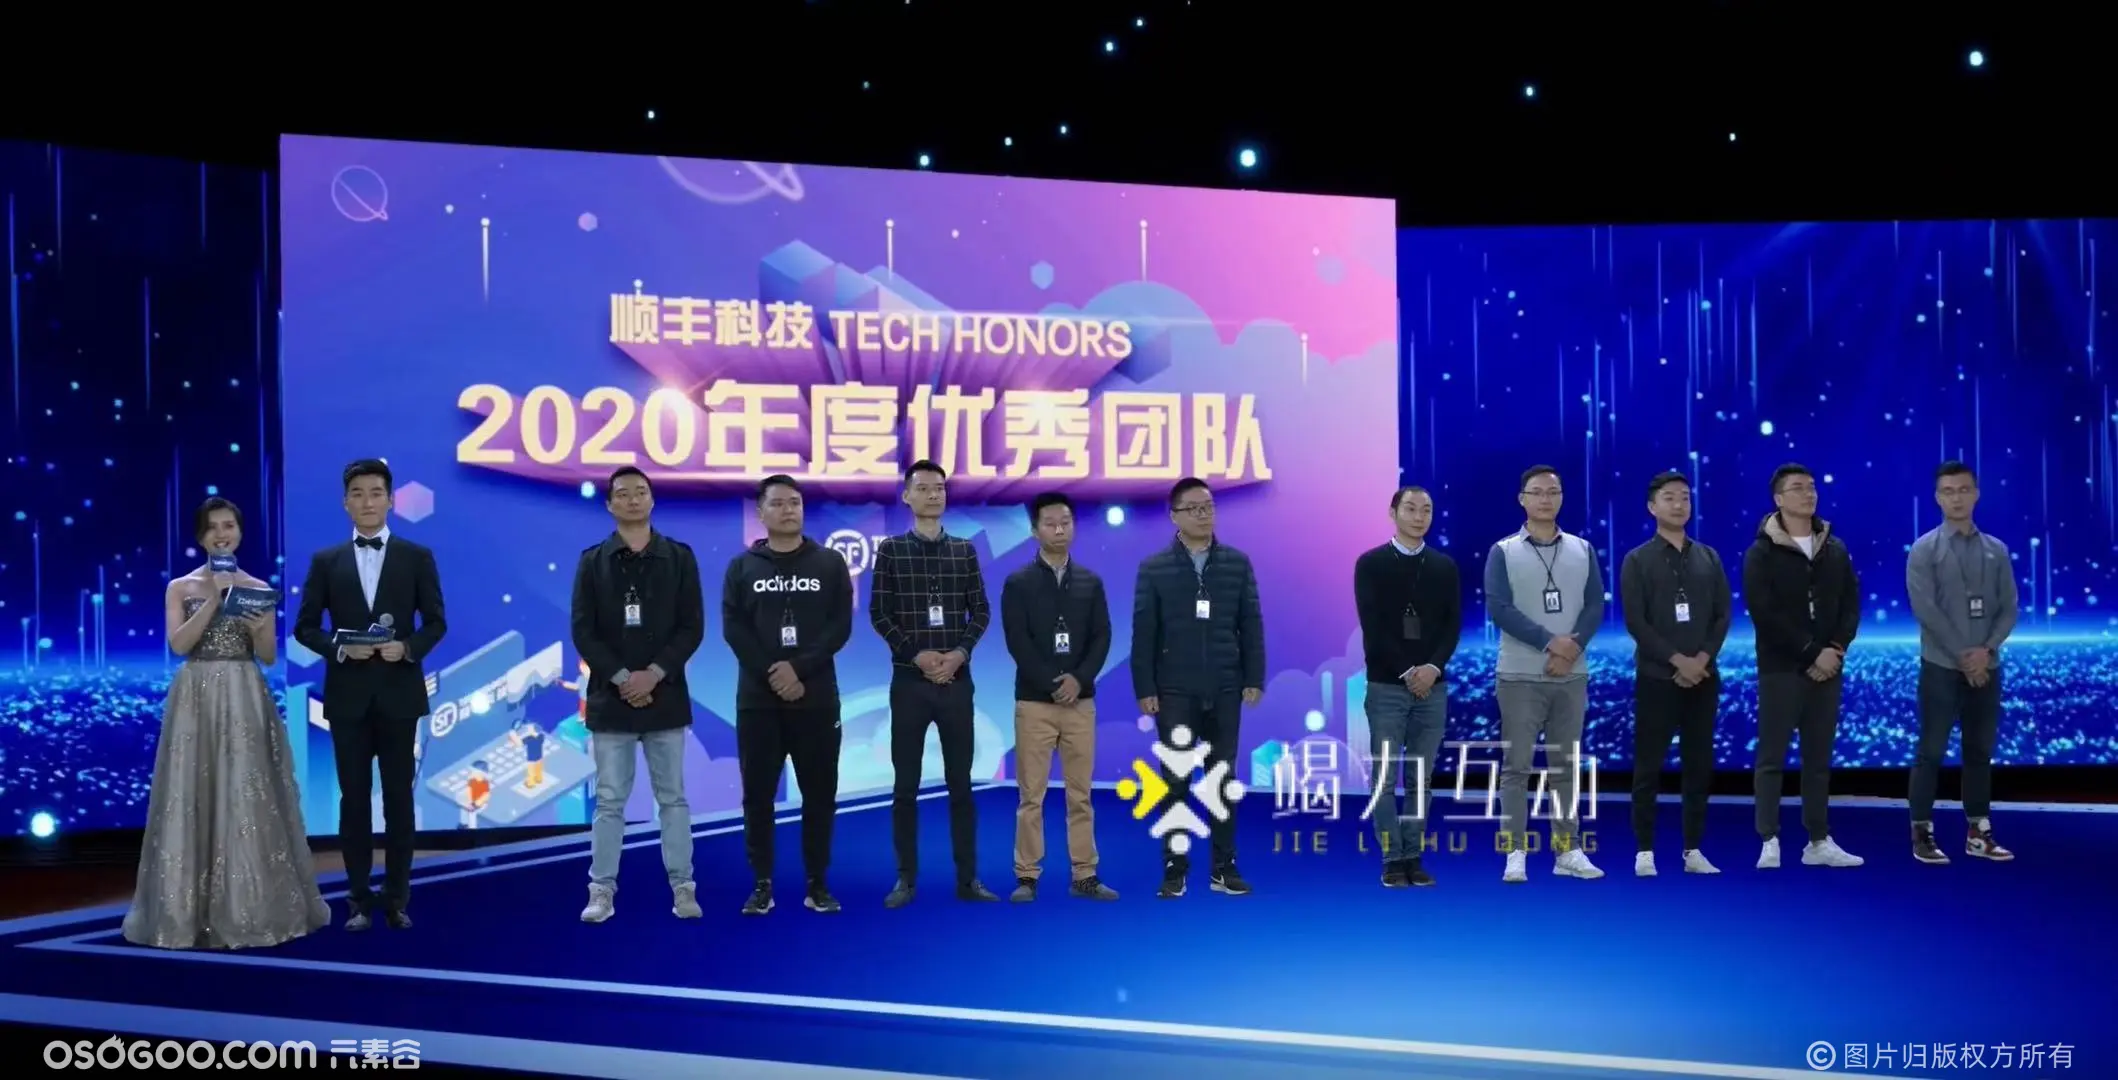 2021顺丰科技虚拟直播线上年会